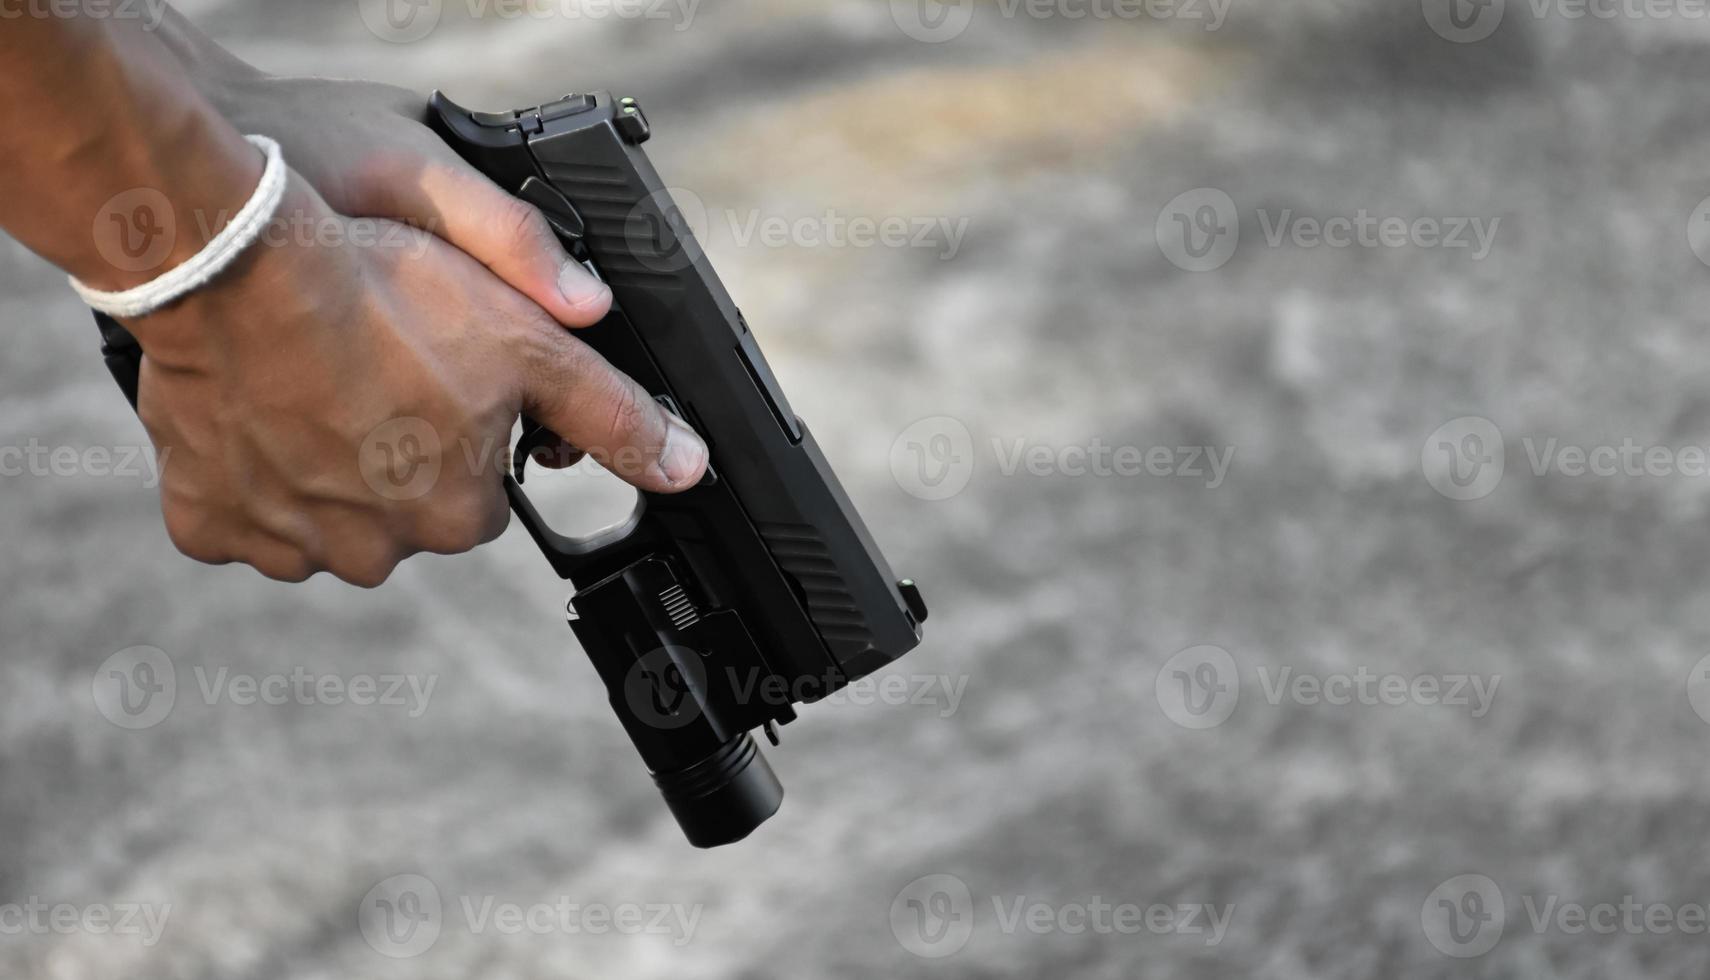 Pistola automática de 9 mm sujeta en la mano derecha del tirador, concepto de seguridad, robo, gángster, guardaespaldas en todo el mundo. enfoque selectivo en pistola. foto